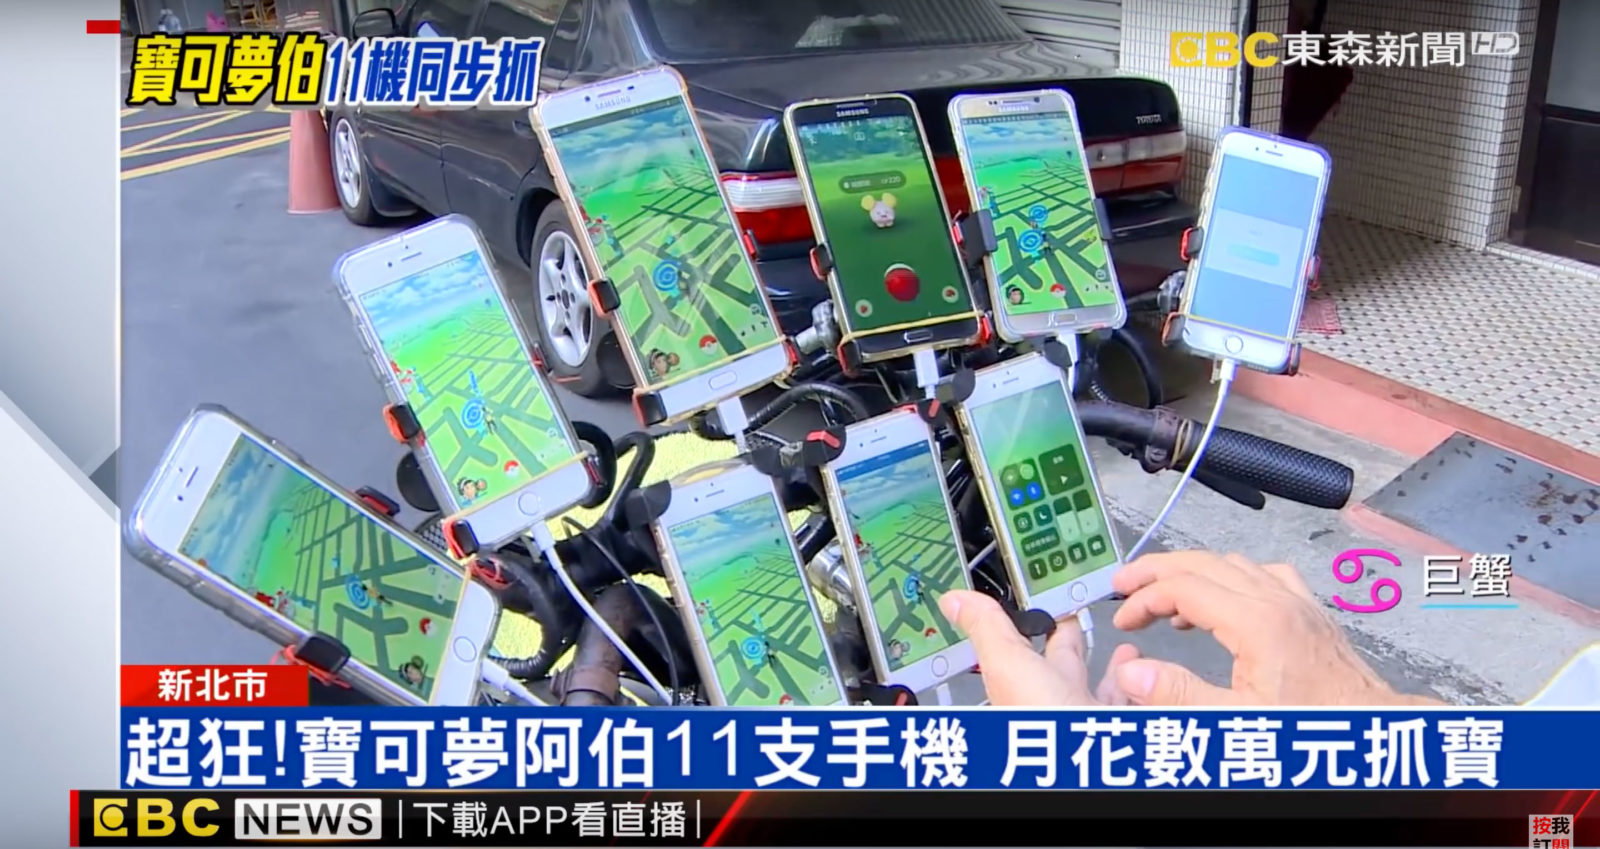 Un uomo taiwanese va in giro con 11 telefoni per giocare con Pokémon GO